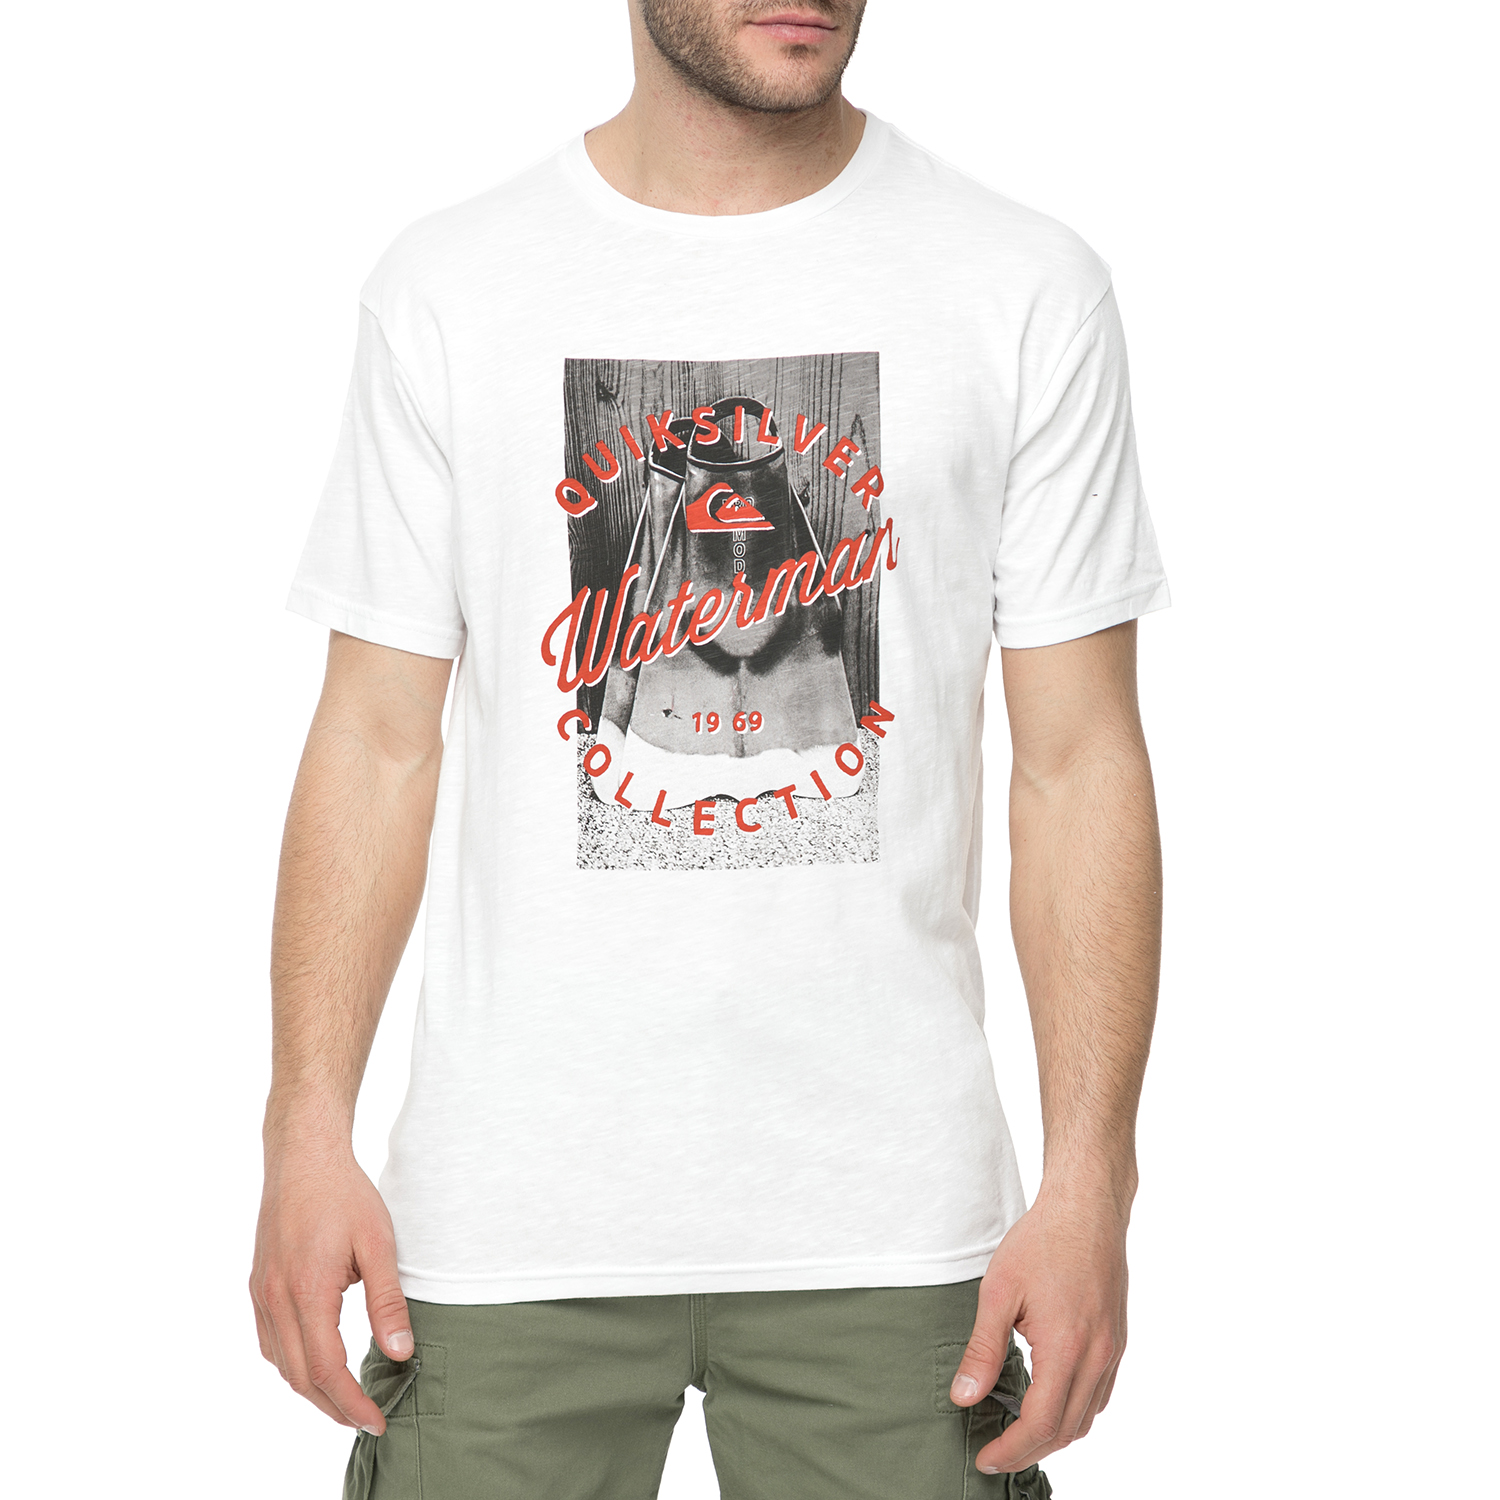 Ανδρικά/Ρούχα/Μπλούζες/Κοντομάνικες QUIKSILVER - Ανδρικό t-shirt με στάμπα QUIKSILVER DAWATER λευκή